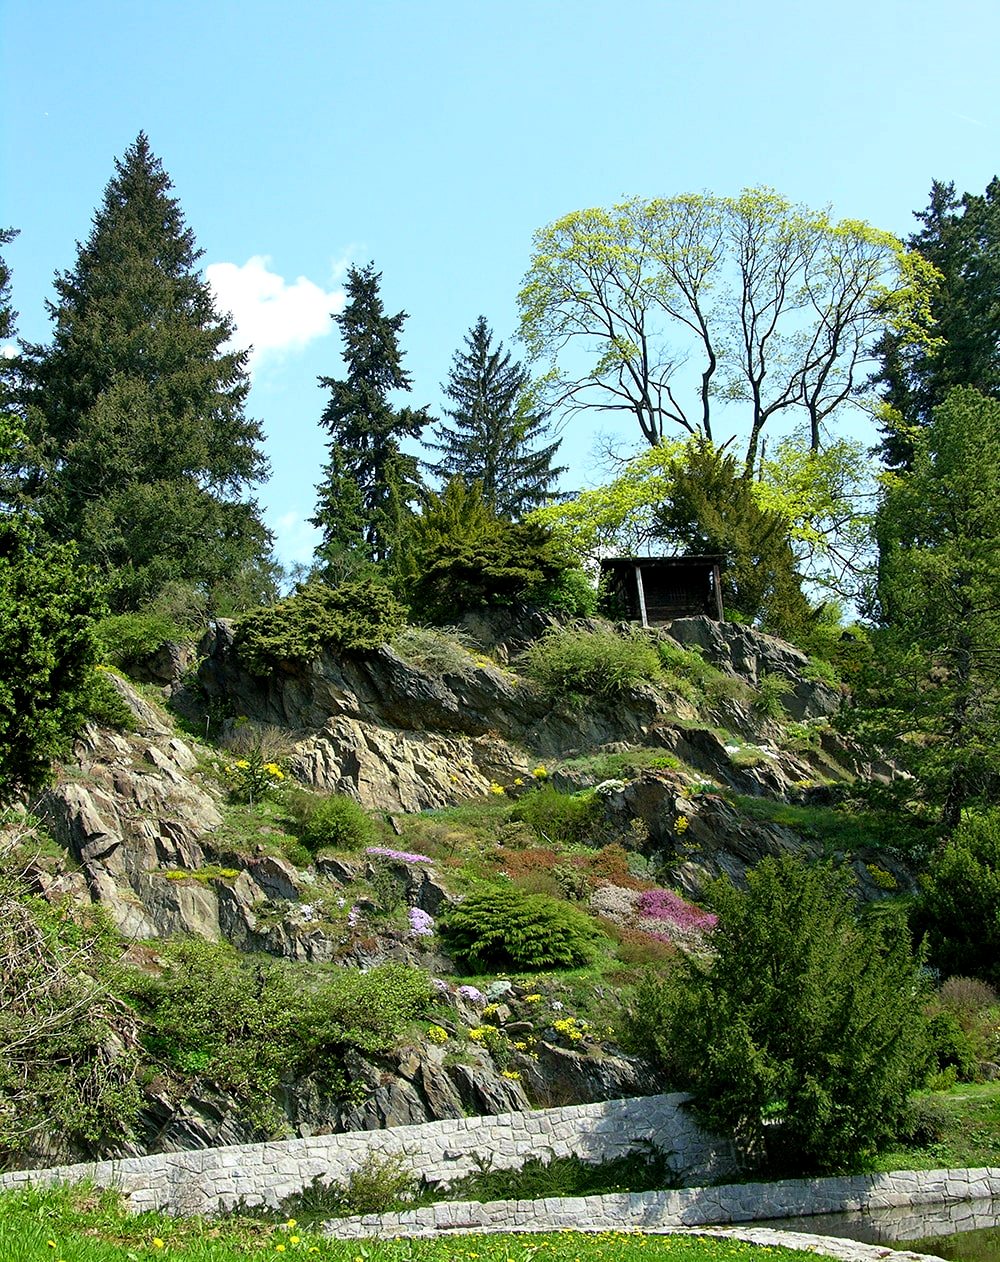 Пругонице, image of landscape/habitat.